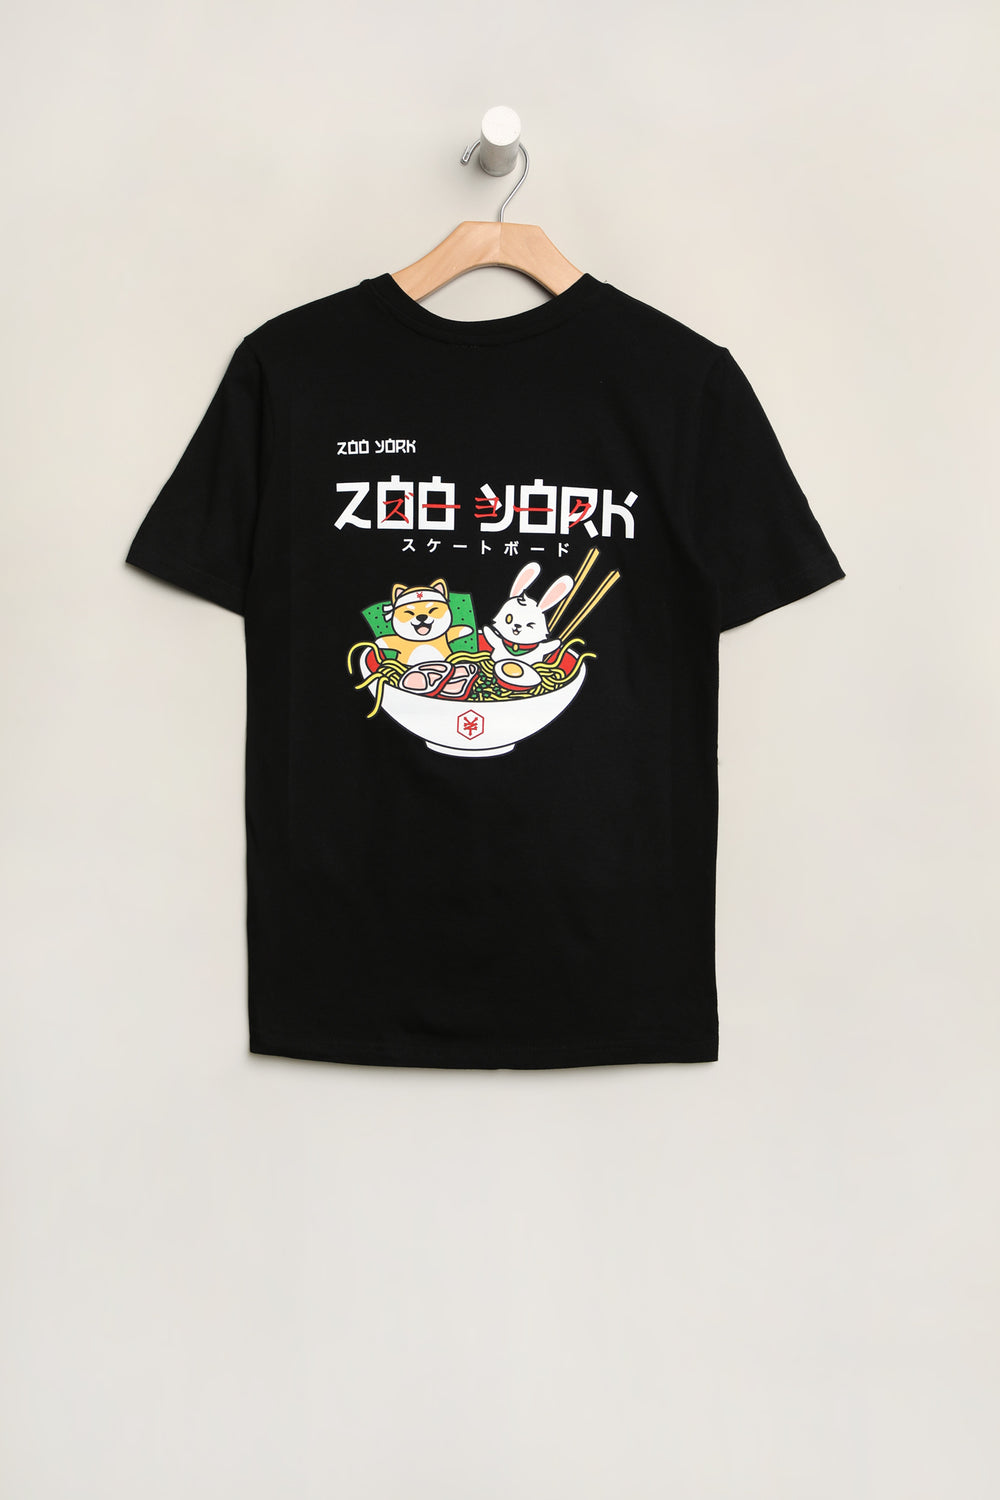 Zoo York Youth Ramen T-Shirt Zoo York Youth Ramen T-Shirt